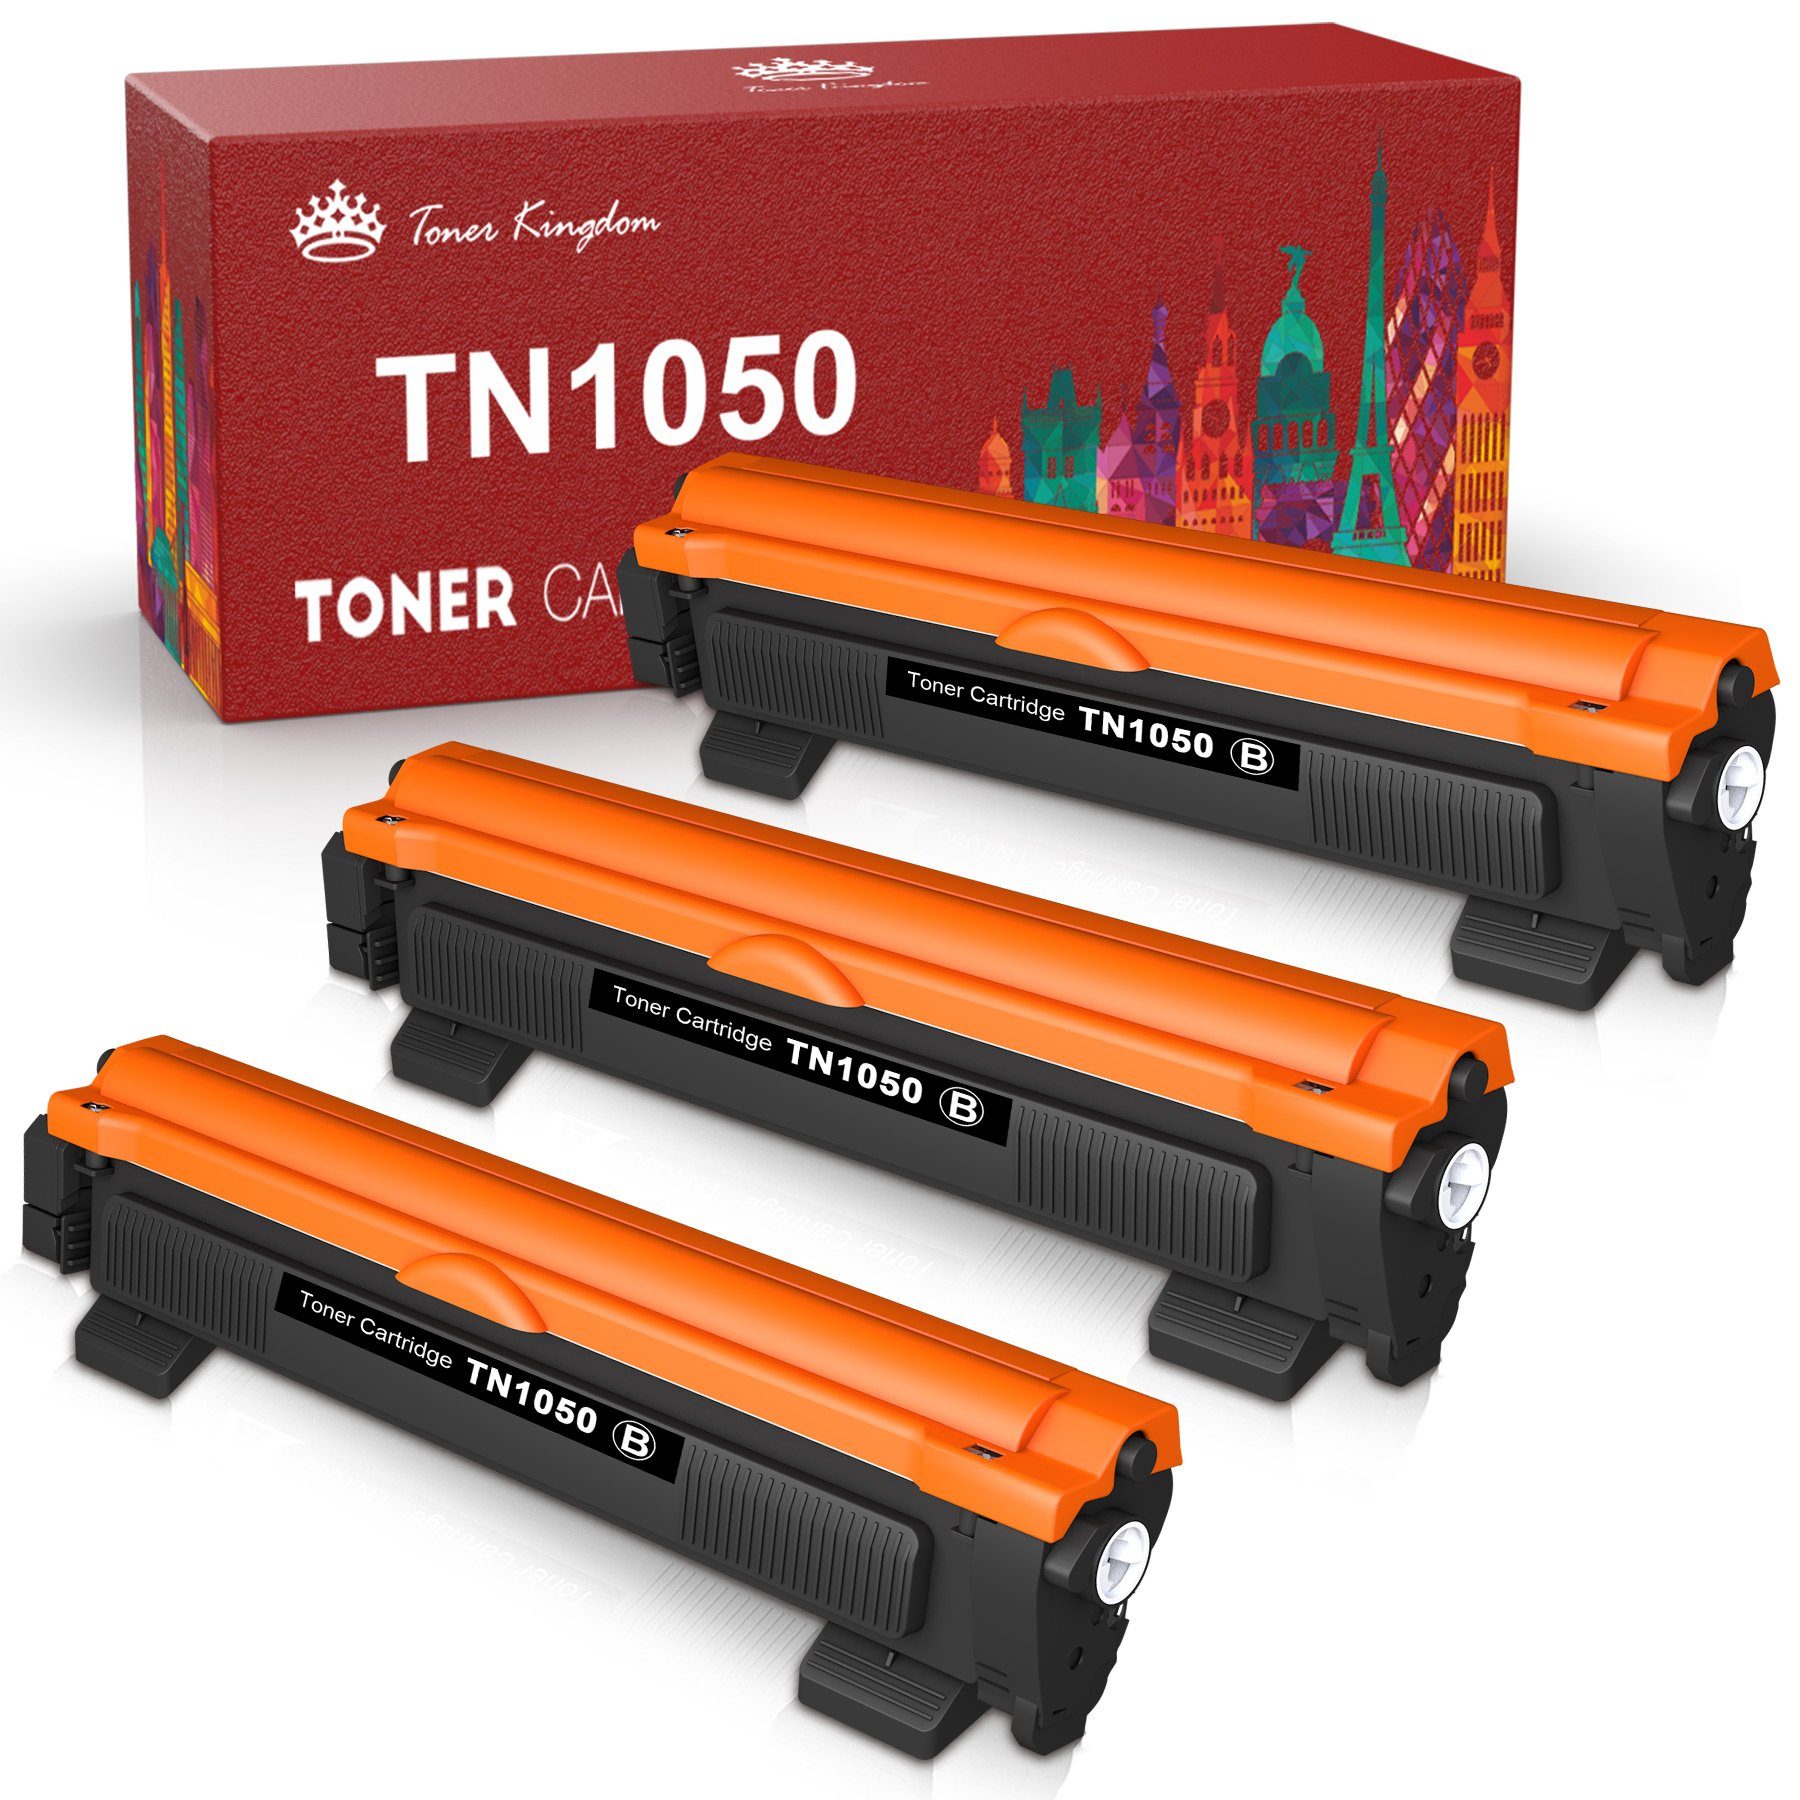 Toner Kingdom Tonerpatrone TN1050 TN für Brother 1050 MFC-1810 MFC-1910W